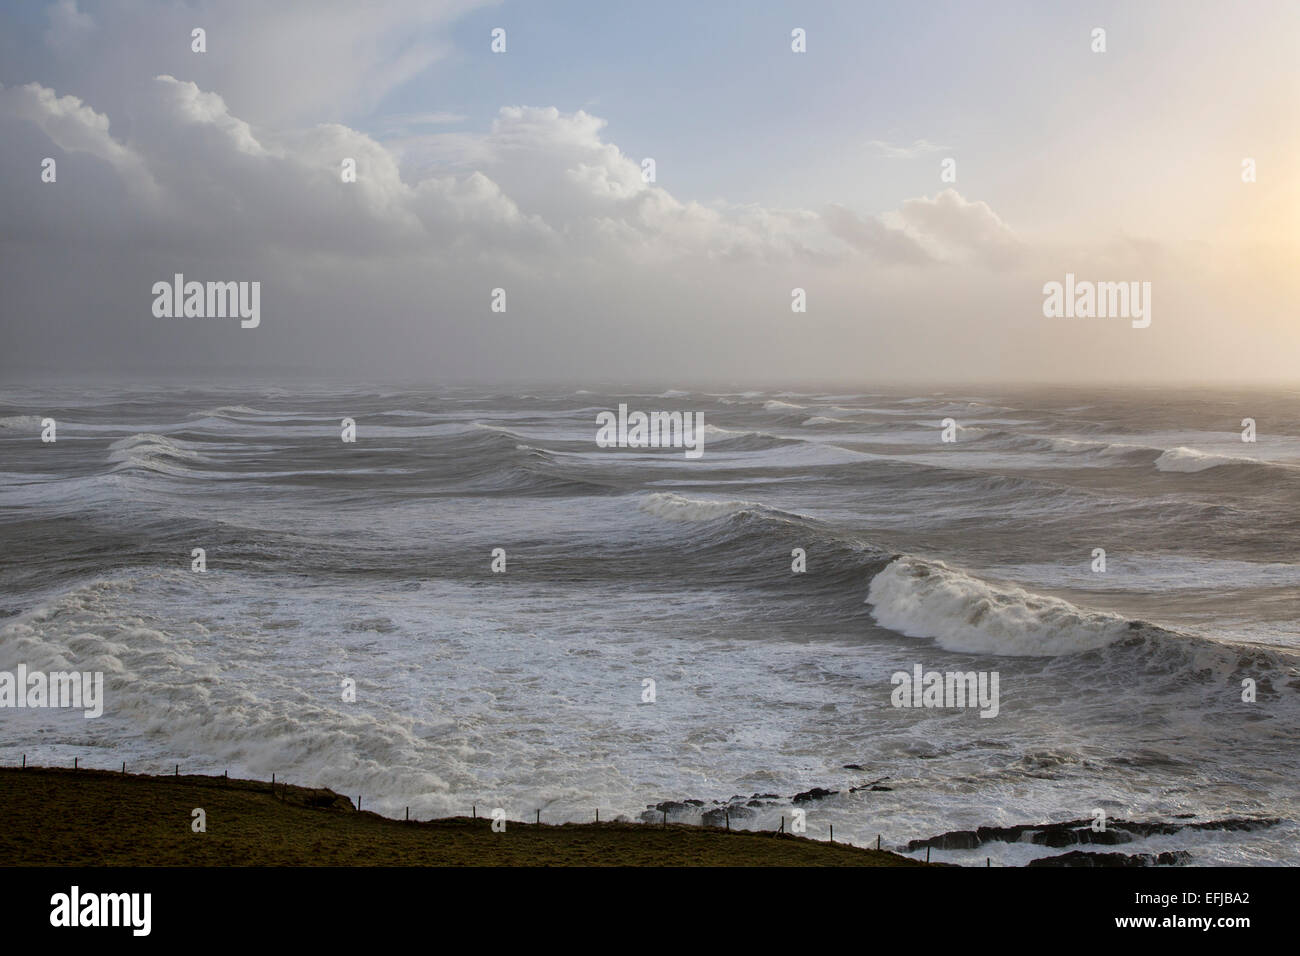 L'hiver très rude en mer au large de la baie de Bideford Saunton, North Devon, Angleterre, Royaume-Uni, avec de grandes vagues cresting en fin d'après-midi ensoleillé Banque D'Images